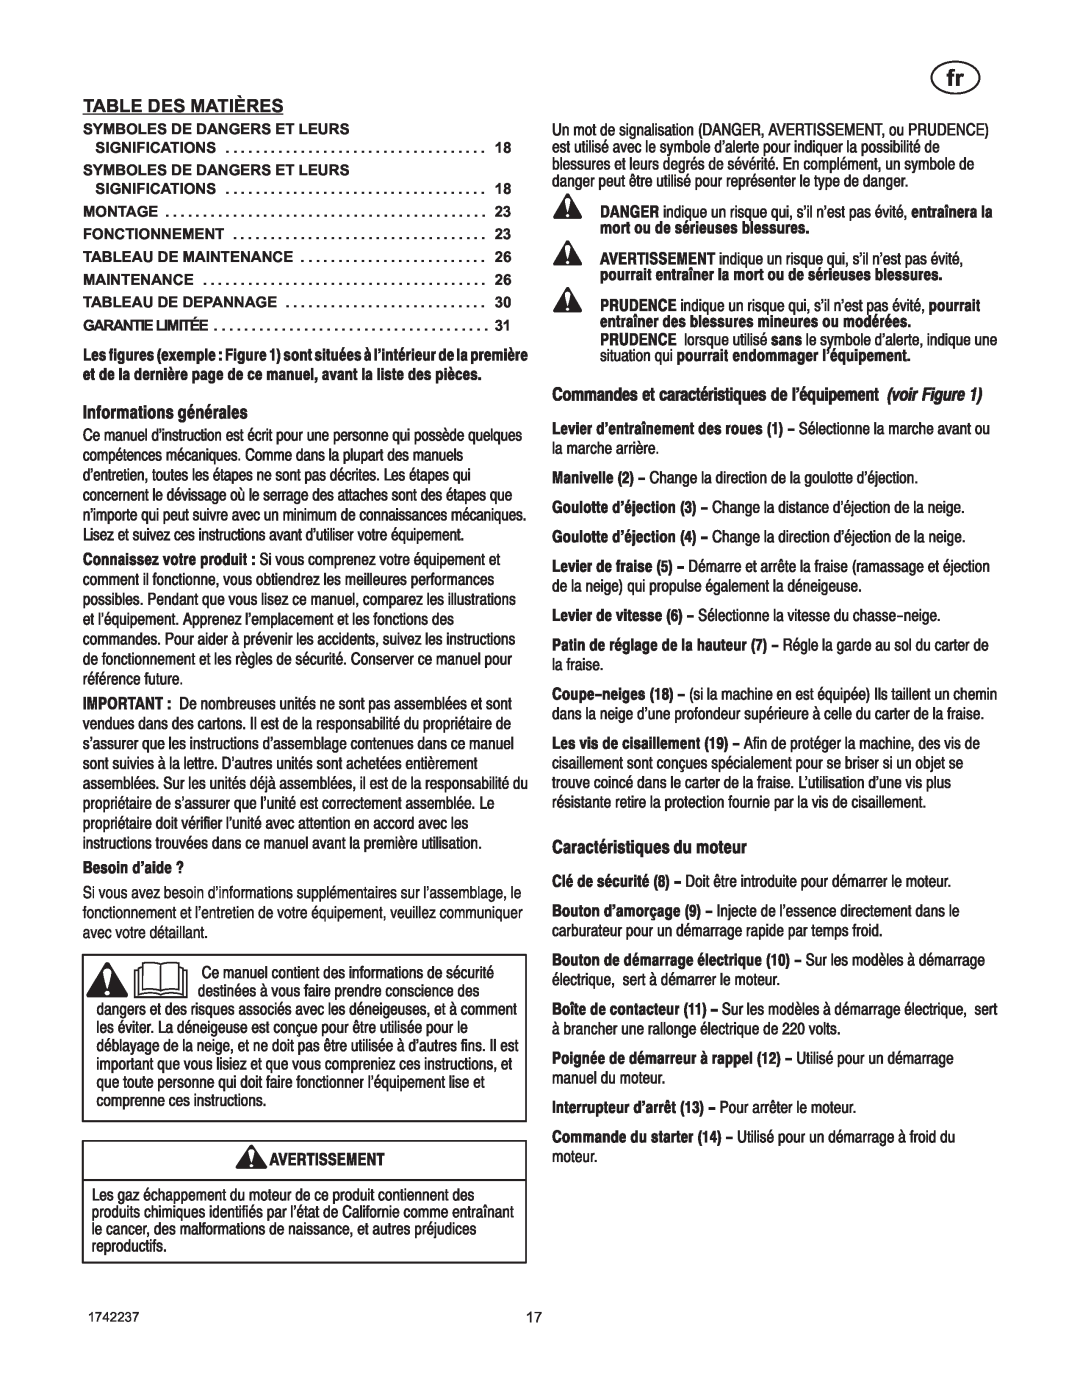 Murray 1740873, TP 199-4955-00-LW-R manual Table Des Matières, Symboles De Dangers Et Leurs Significations, Garantie Limitée 